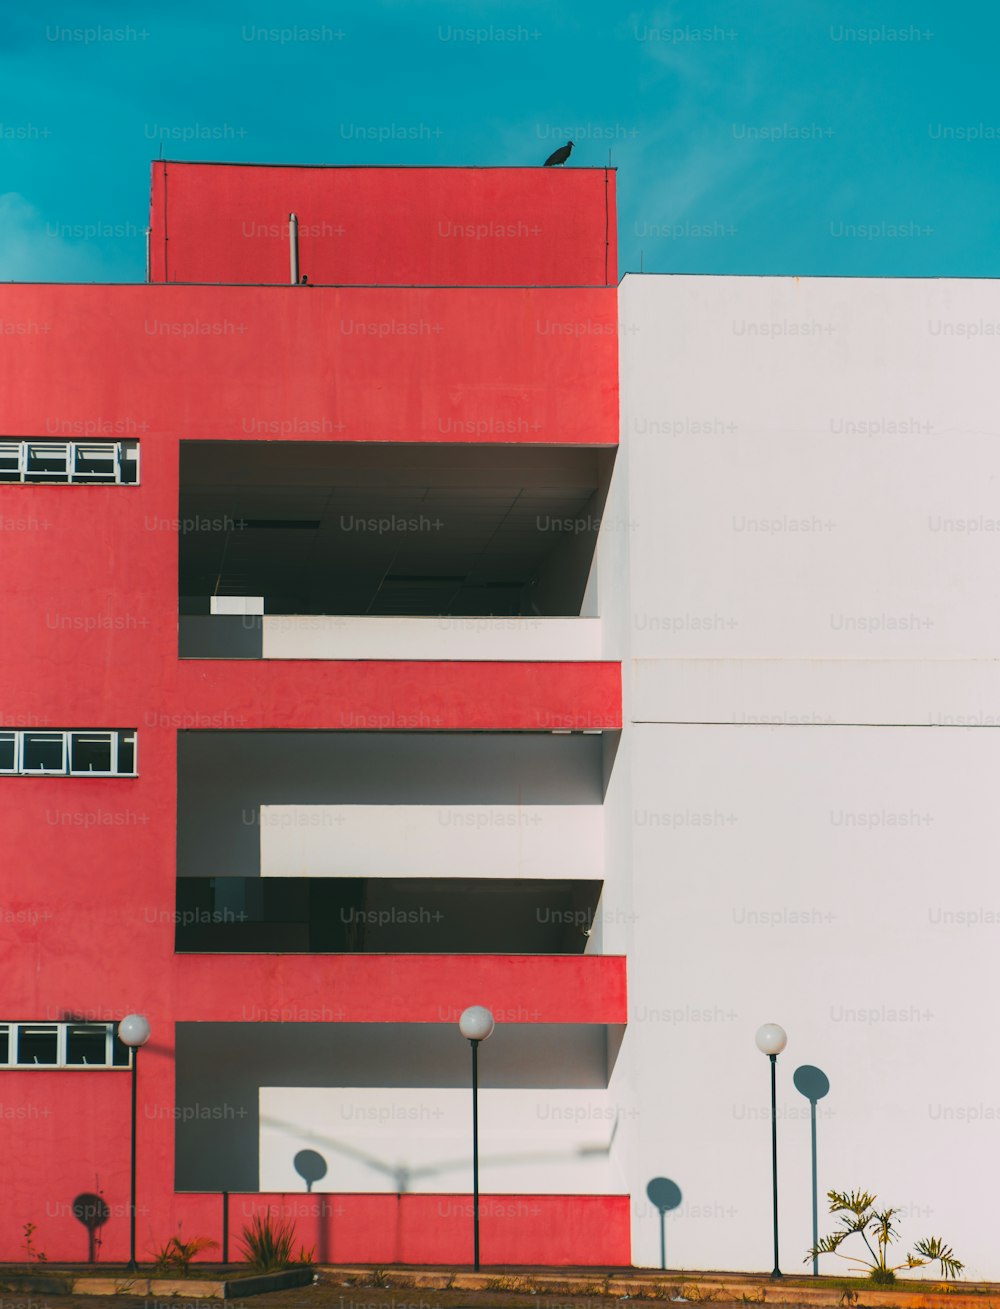 La facciata dell'edificio moderno è divisa in due: una parte della facciata è rossa e presenta balconi e finestre, un'altra parte è bianca; lanterne sotto, un enorme uccello sul tetto, geometria minimalista